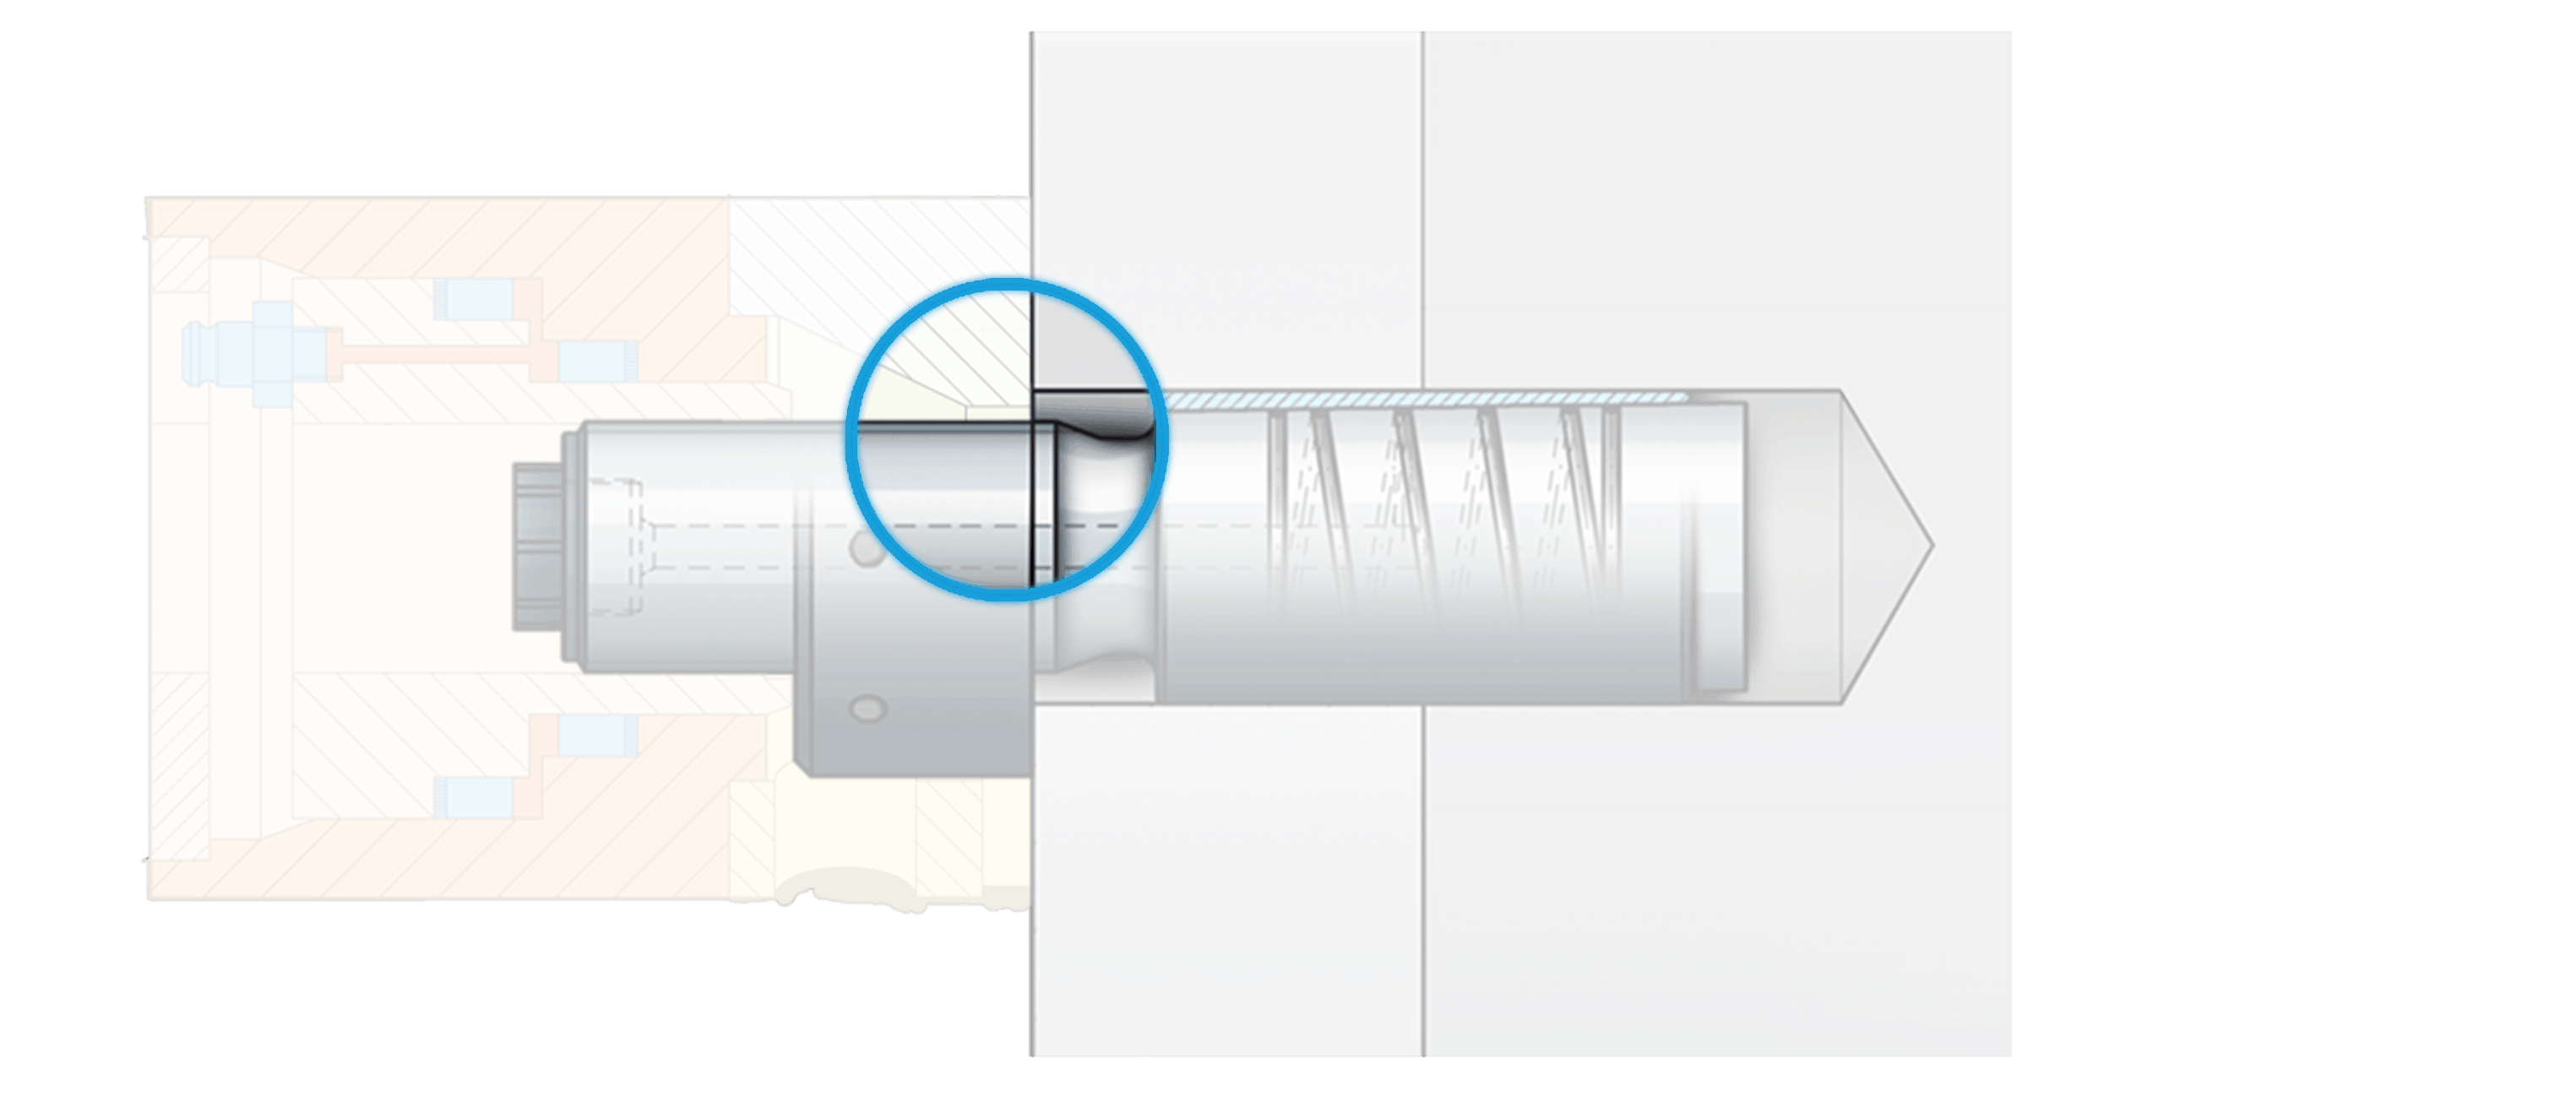 Positionierring zum Festhalten der Konushülse, 
während der Kegelbolzen in die Konushülse 
hineingezogen wird. Dadurch Expansion (Expa) der Hülse und Presssitzerzeugung in der Bohrung.